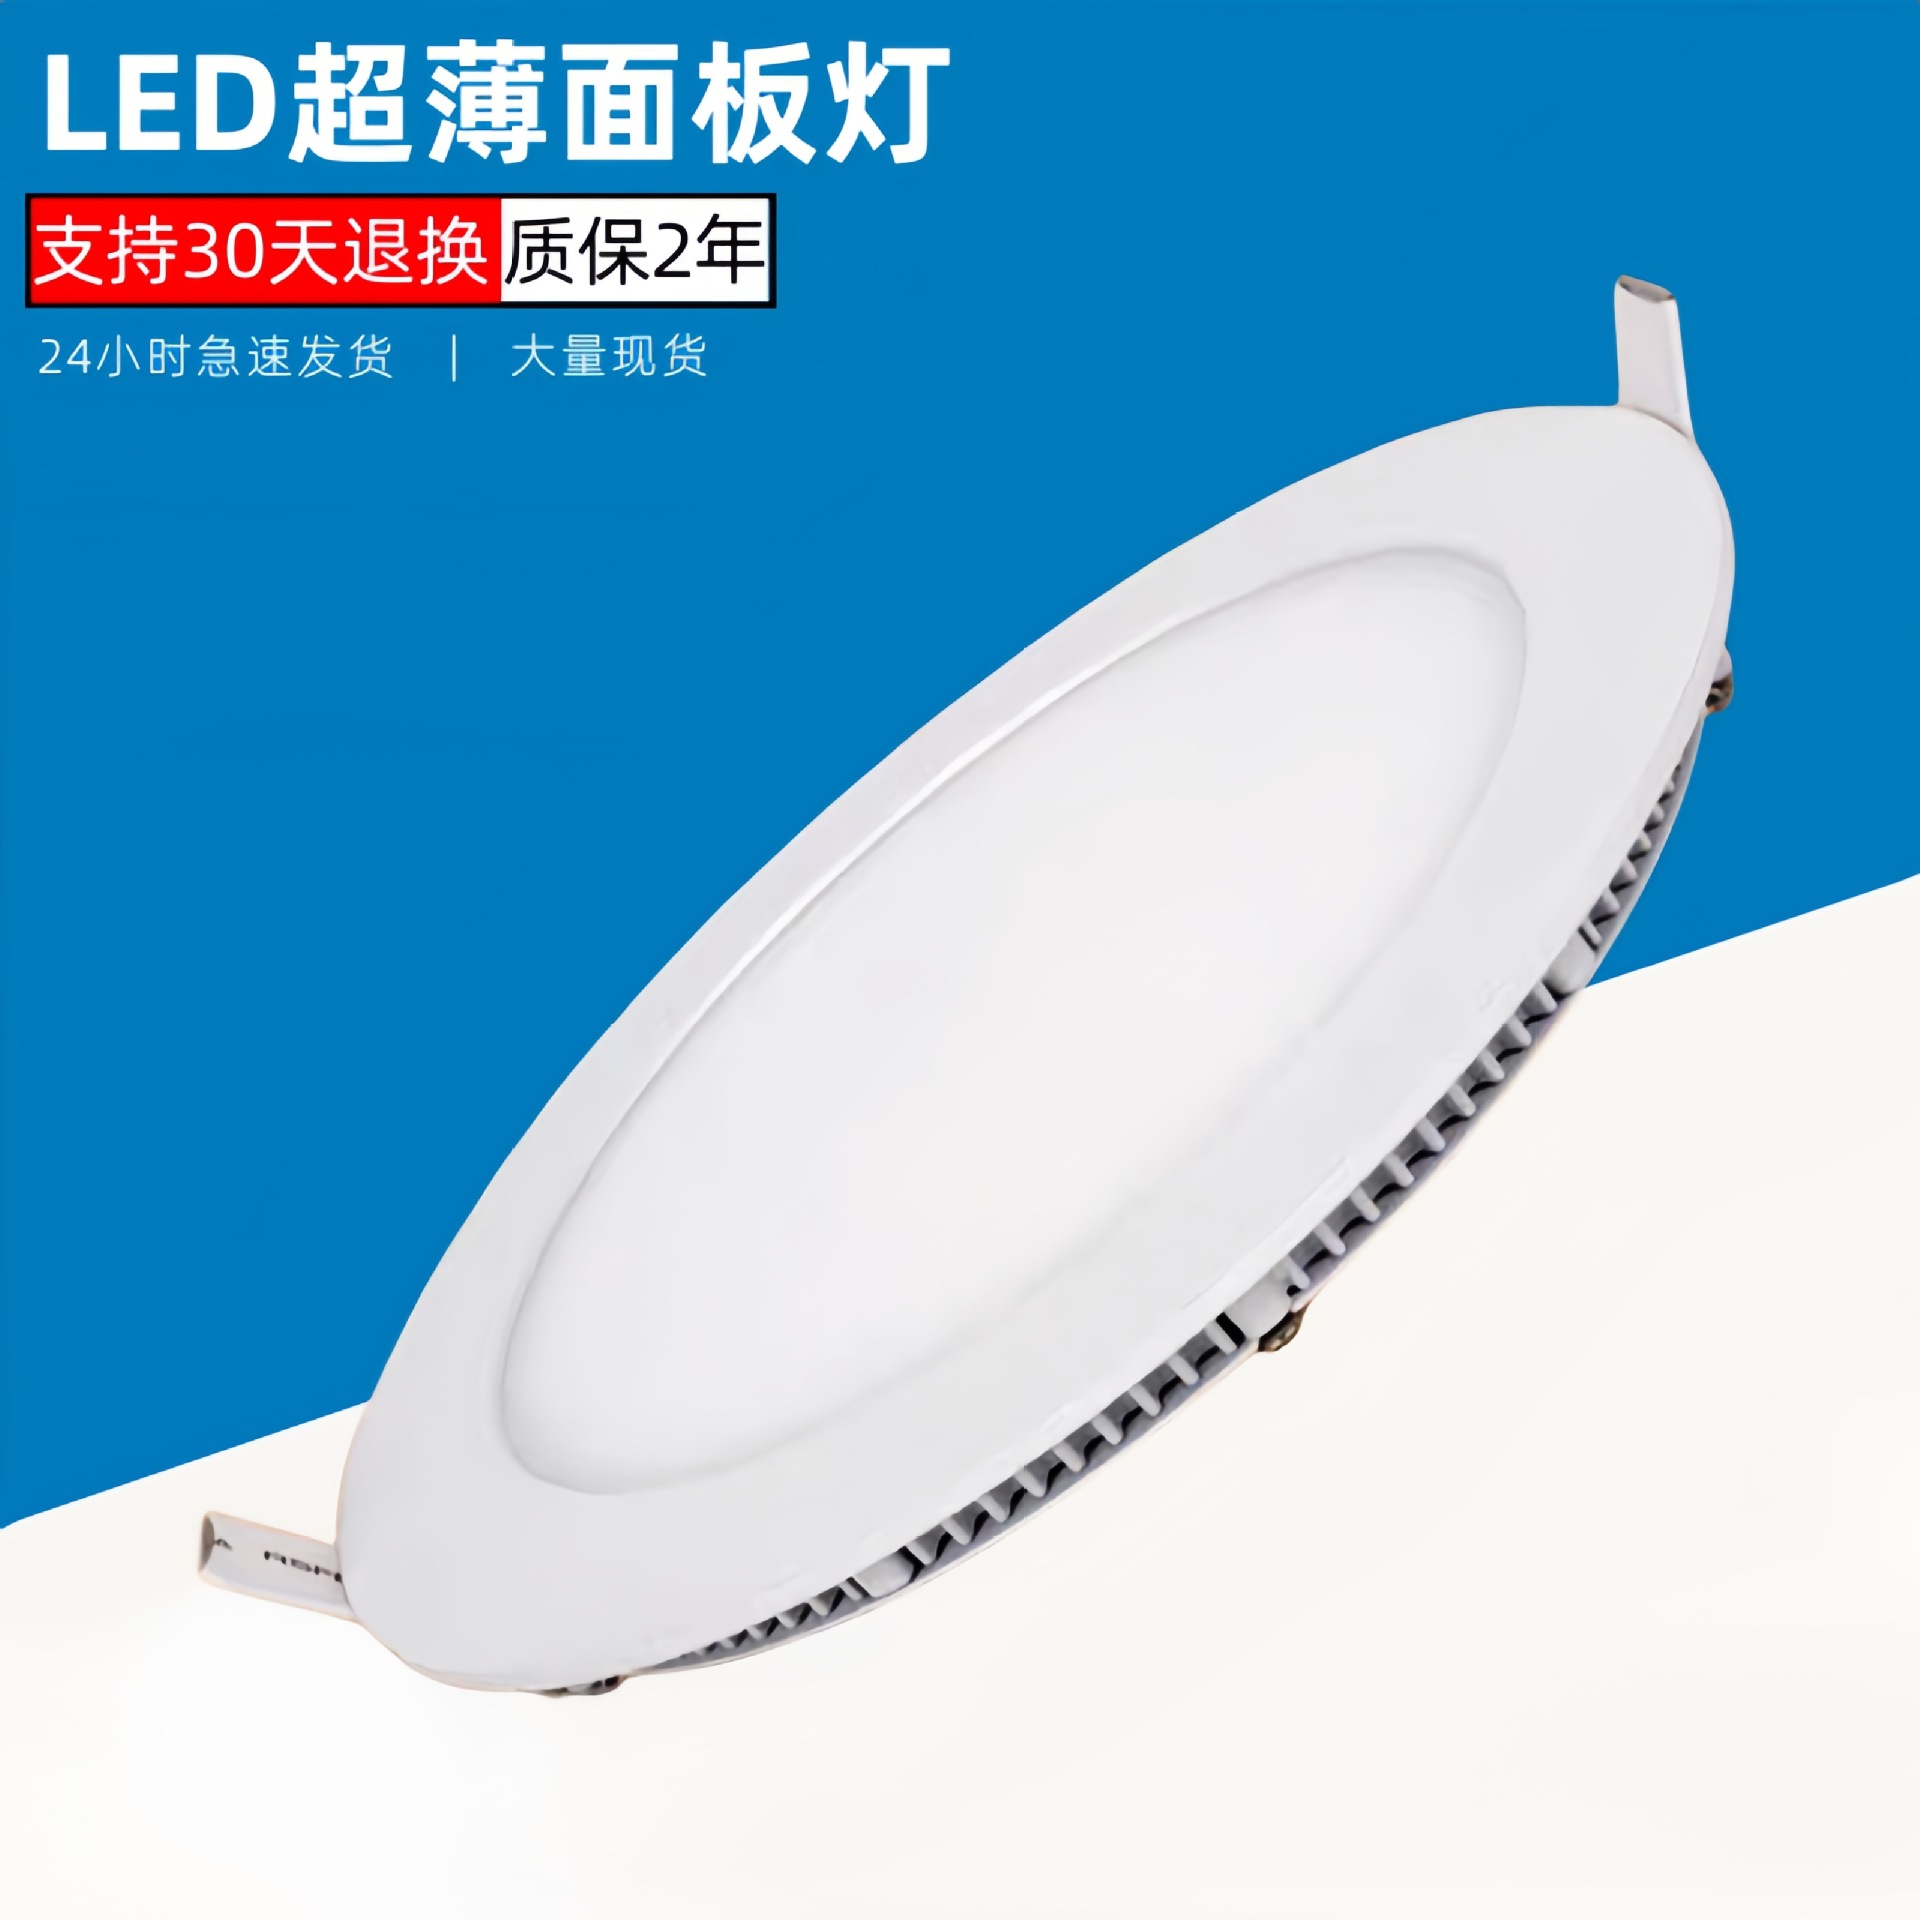 圆形方形超薄灯具小吊顶专用筒灯纤薄平板灯·外贸专供LED面板灯